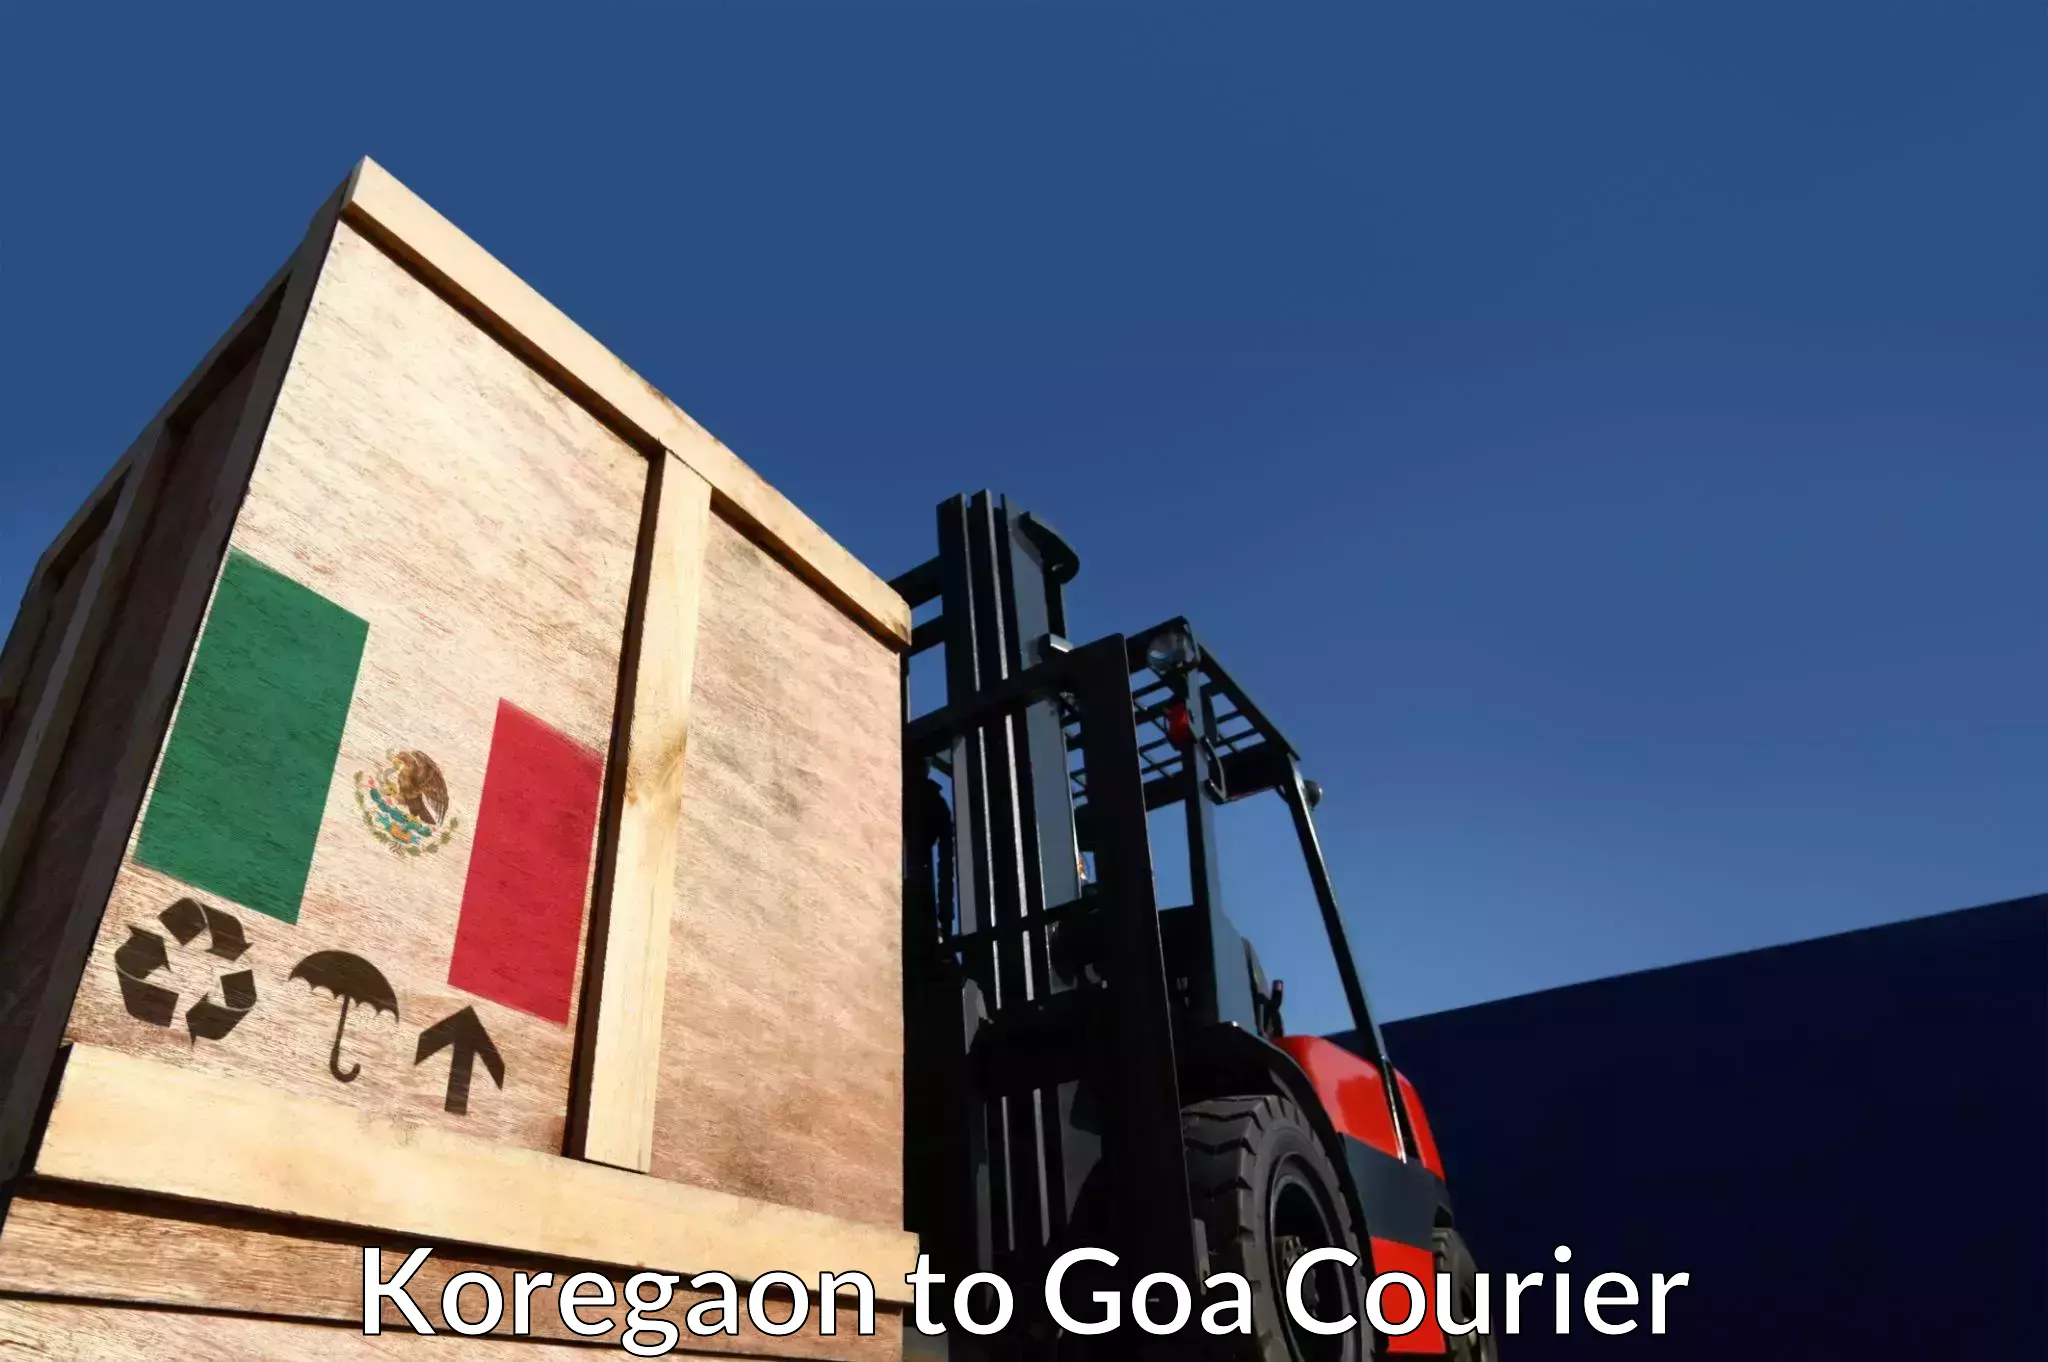 Next-generation courier services Koregaon to Goa